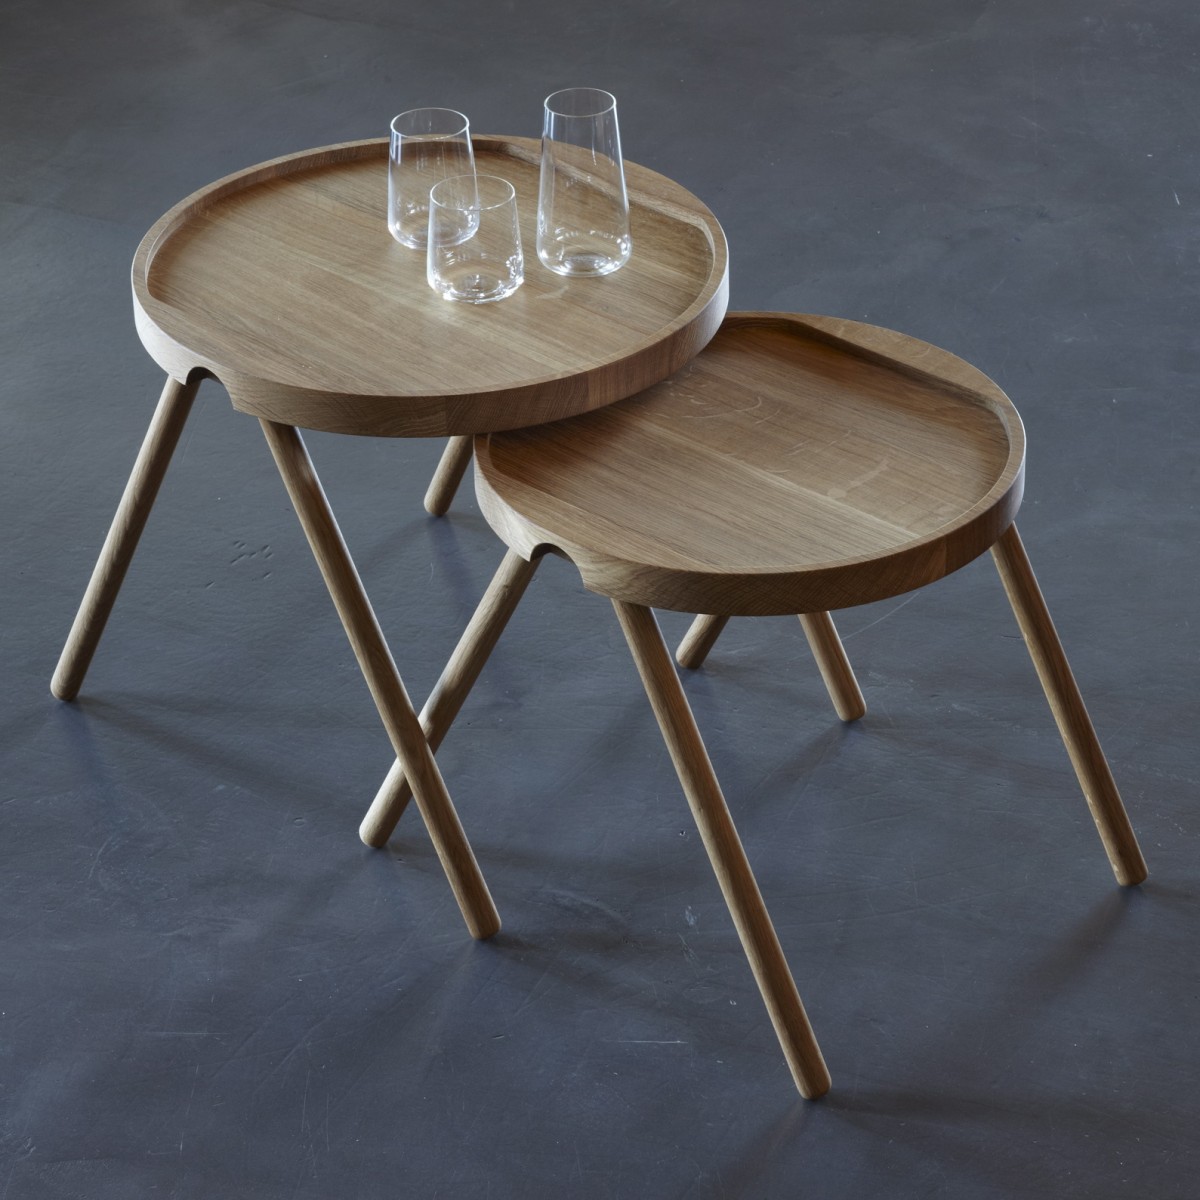 Tablett-Tisch, klein
Design: Tobias Grau